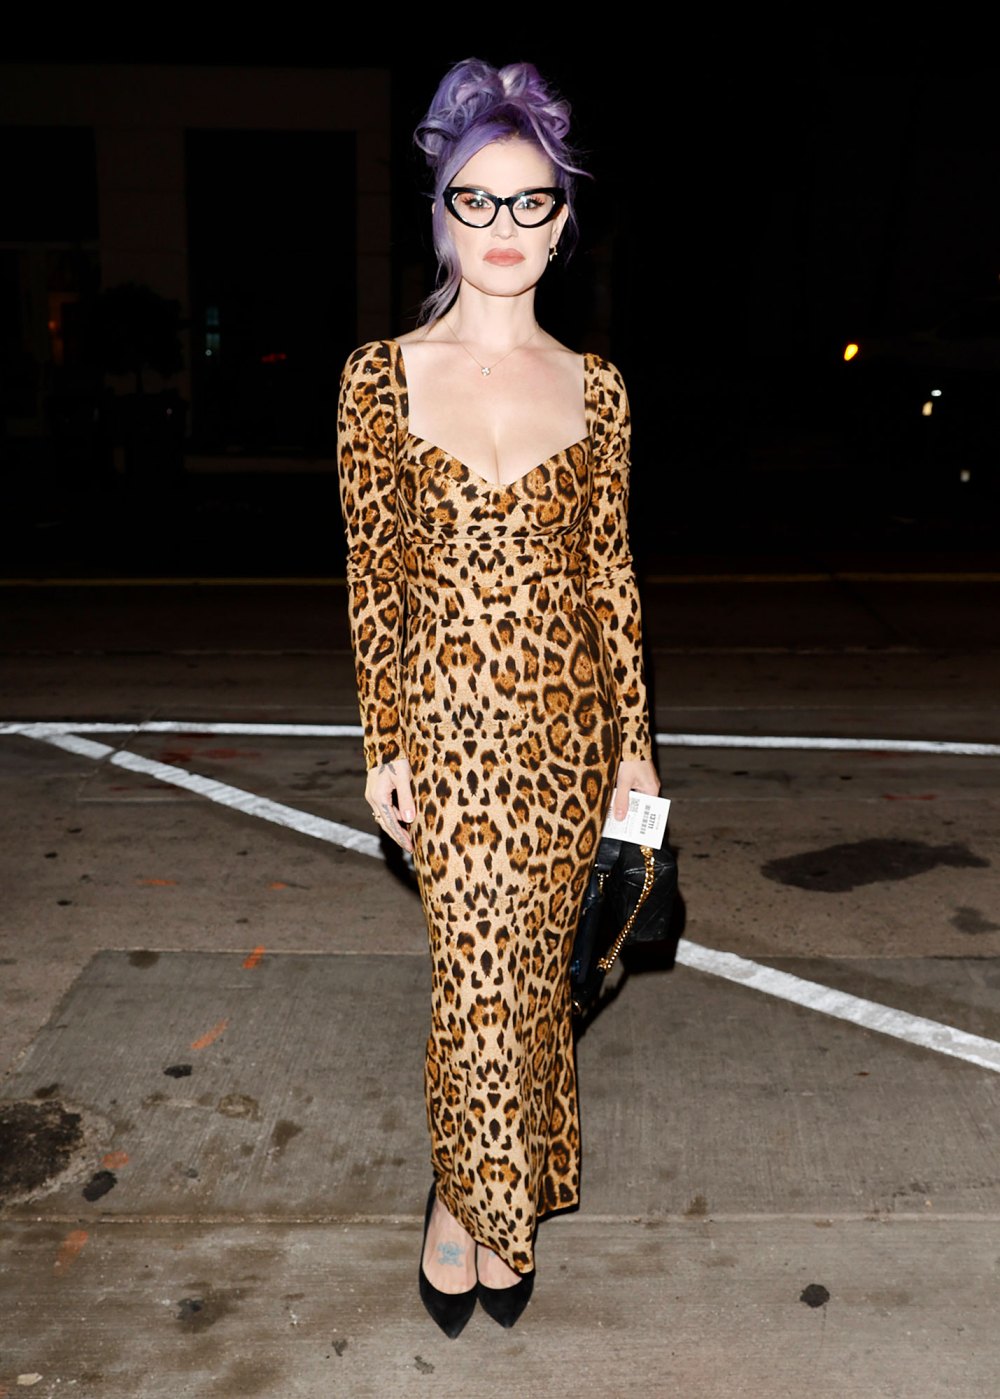 Kelly Osbourne Leopard Dress